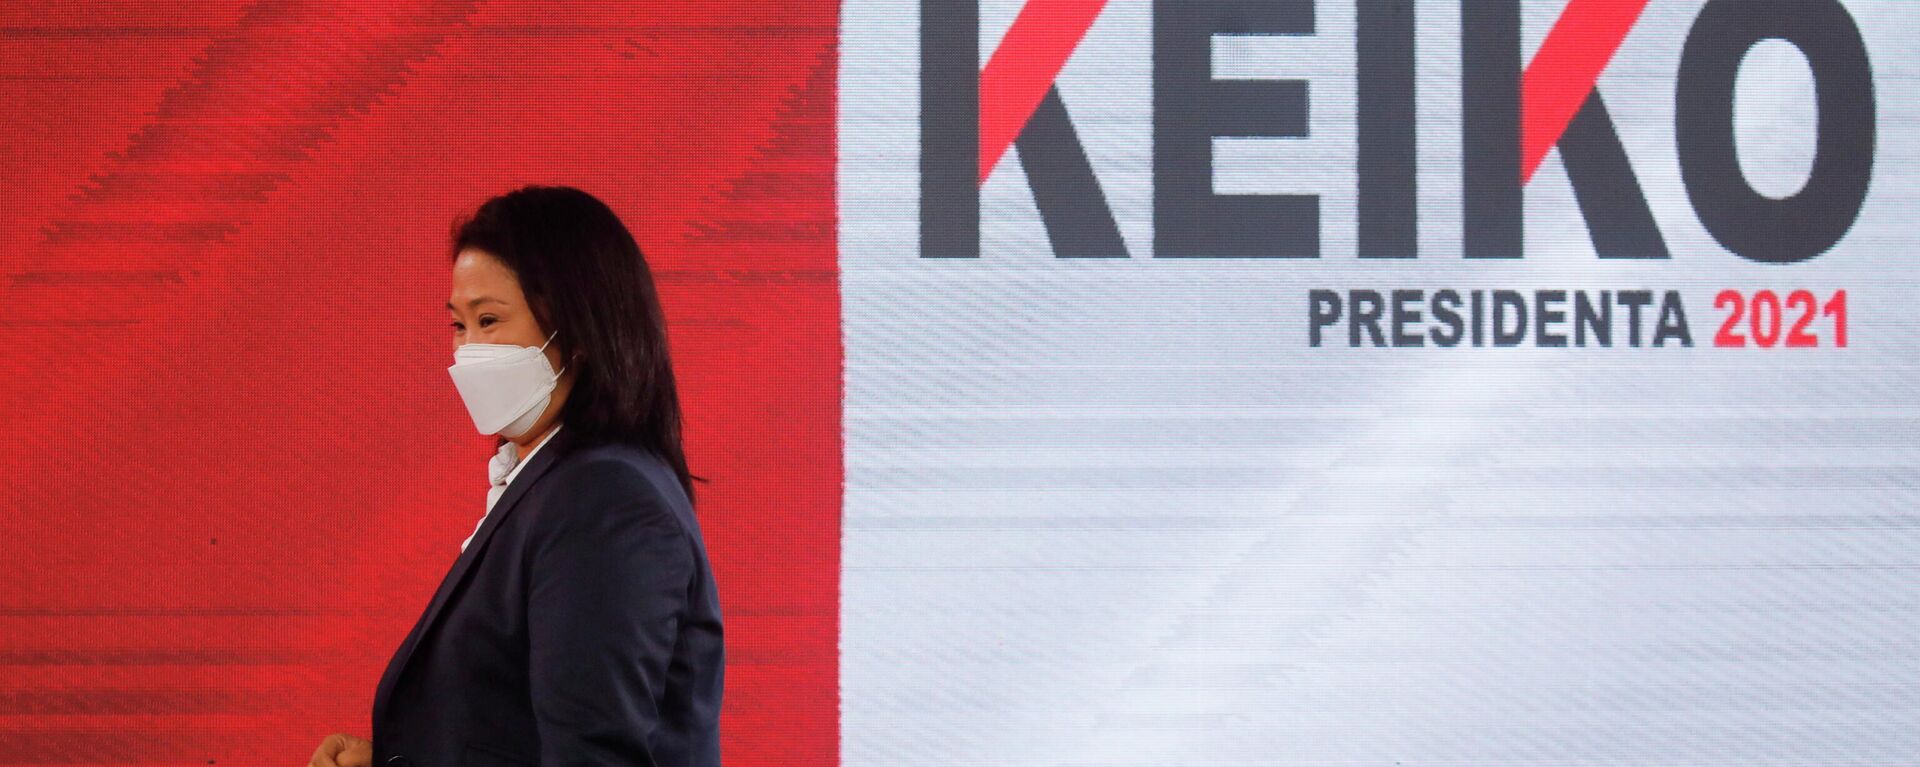 Keiko Fujimori, candidata a la presidencia de Perú - Sputnik Mundo, 1920, 06.07.2021